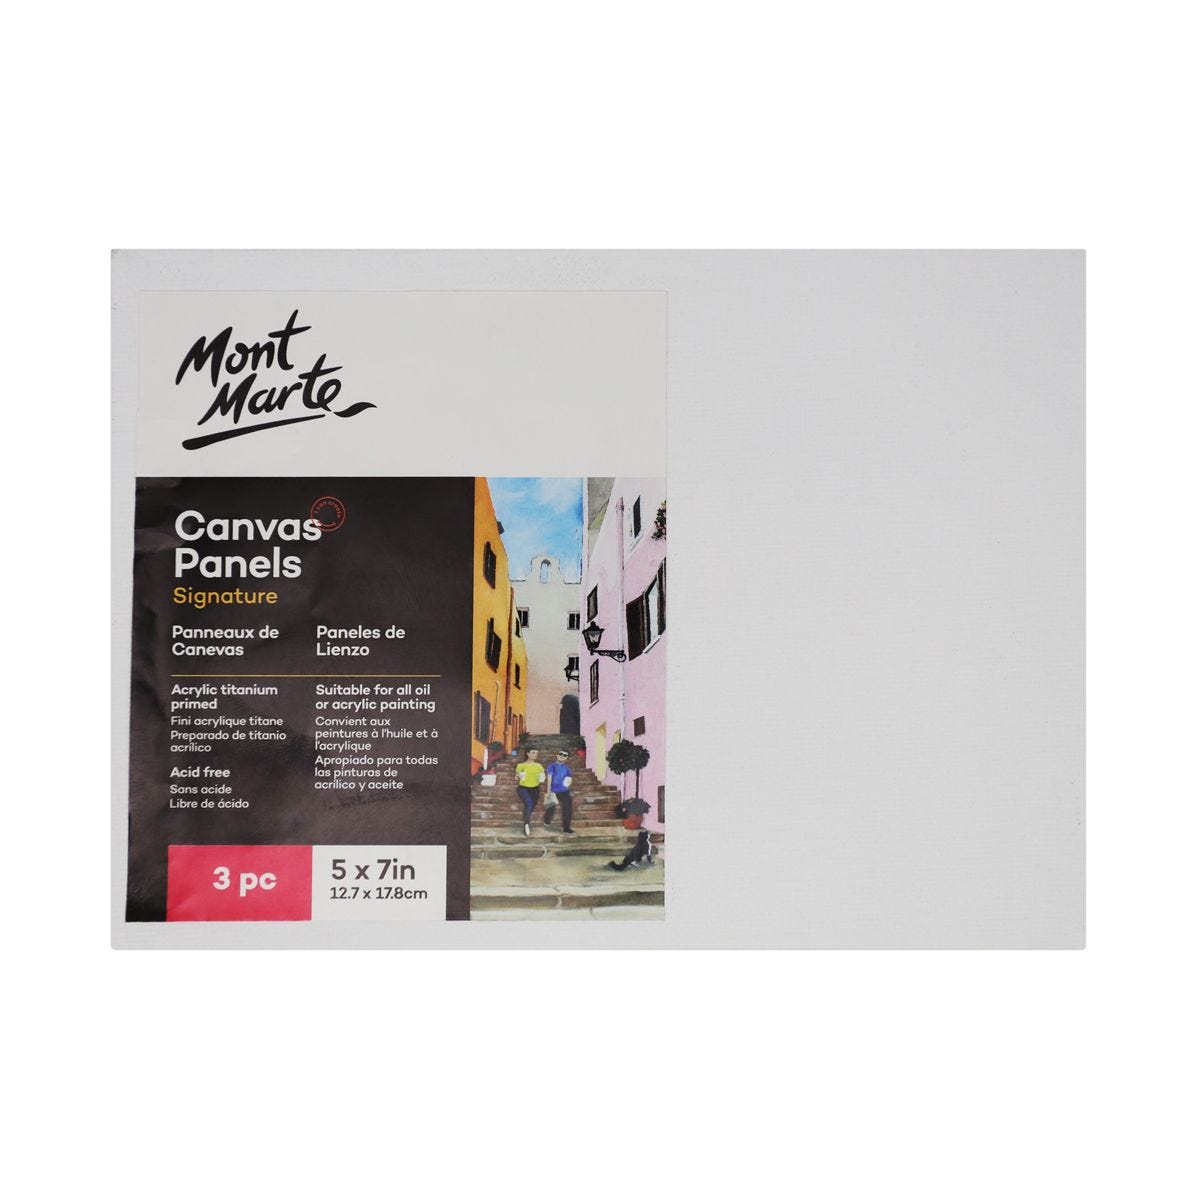 Bộ 3 Tấm Canvas Panel (Toan) hiệu Mont Marte Dùng Để Vẽ Màu Acrylic 12.7x17.8cm - Canvas Panels Signature 3pc 12.7 x 17.8cm (5 x 7in)